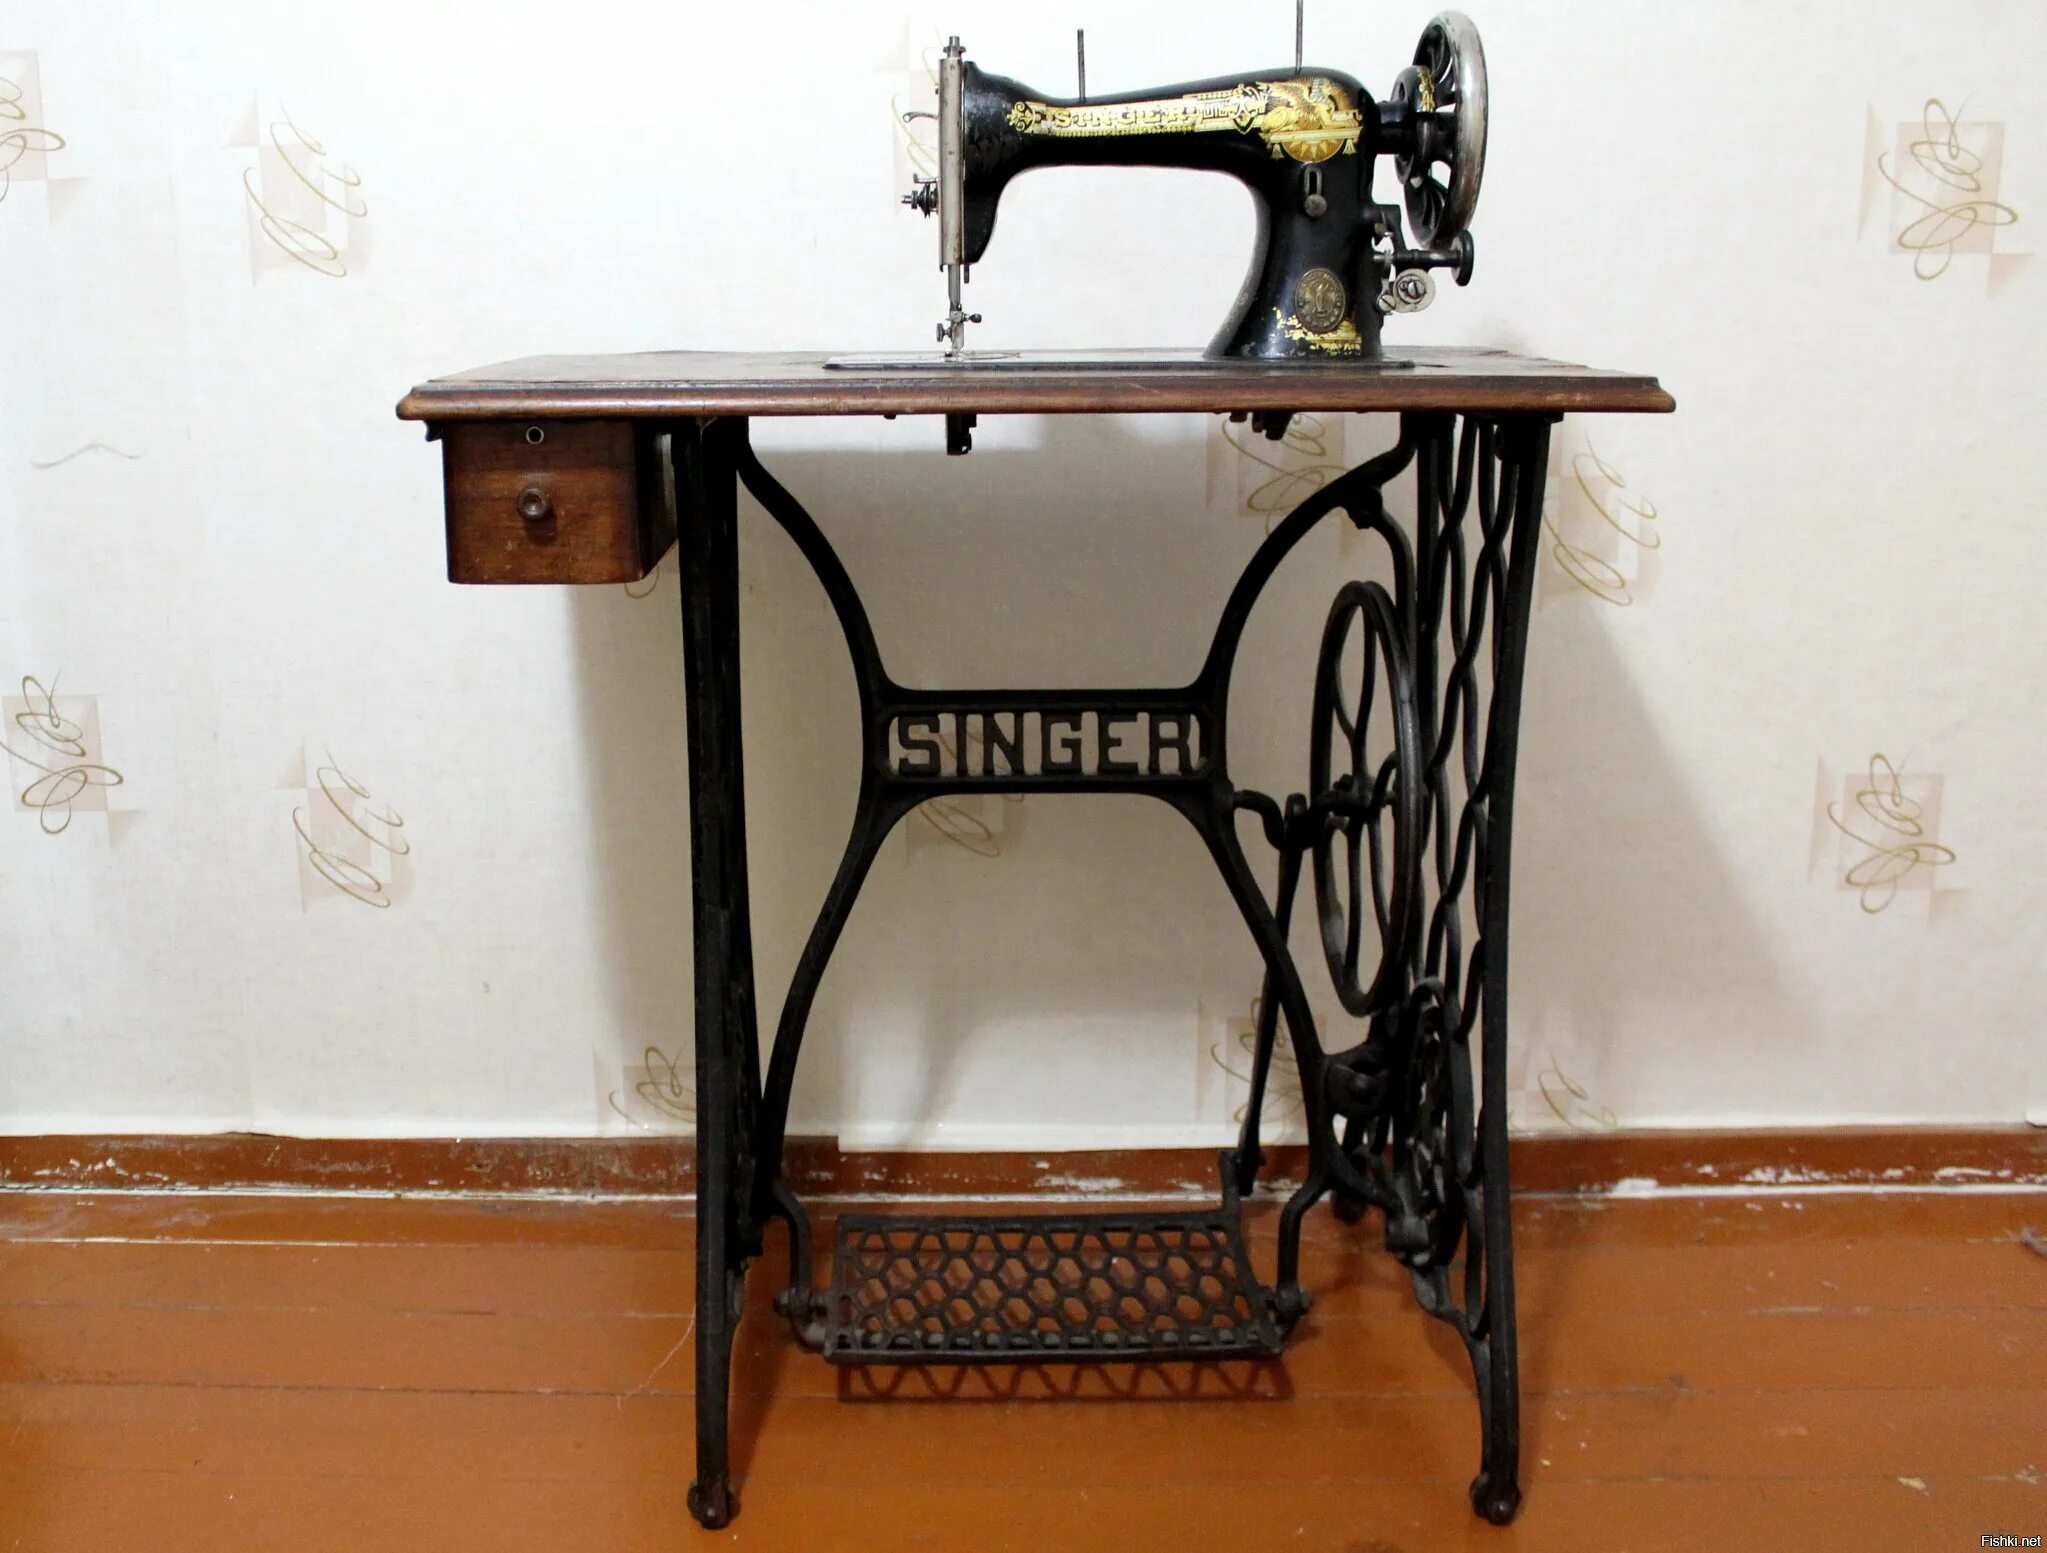 Продать швейную машинку зингер. Швейная машинка (Zinger super 2001). Швейная машинка Зингер 1950 г. Zinger швейная машинка ножная. Машинка Зингер 2 швейная.